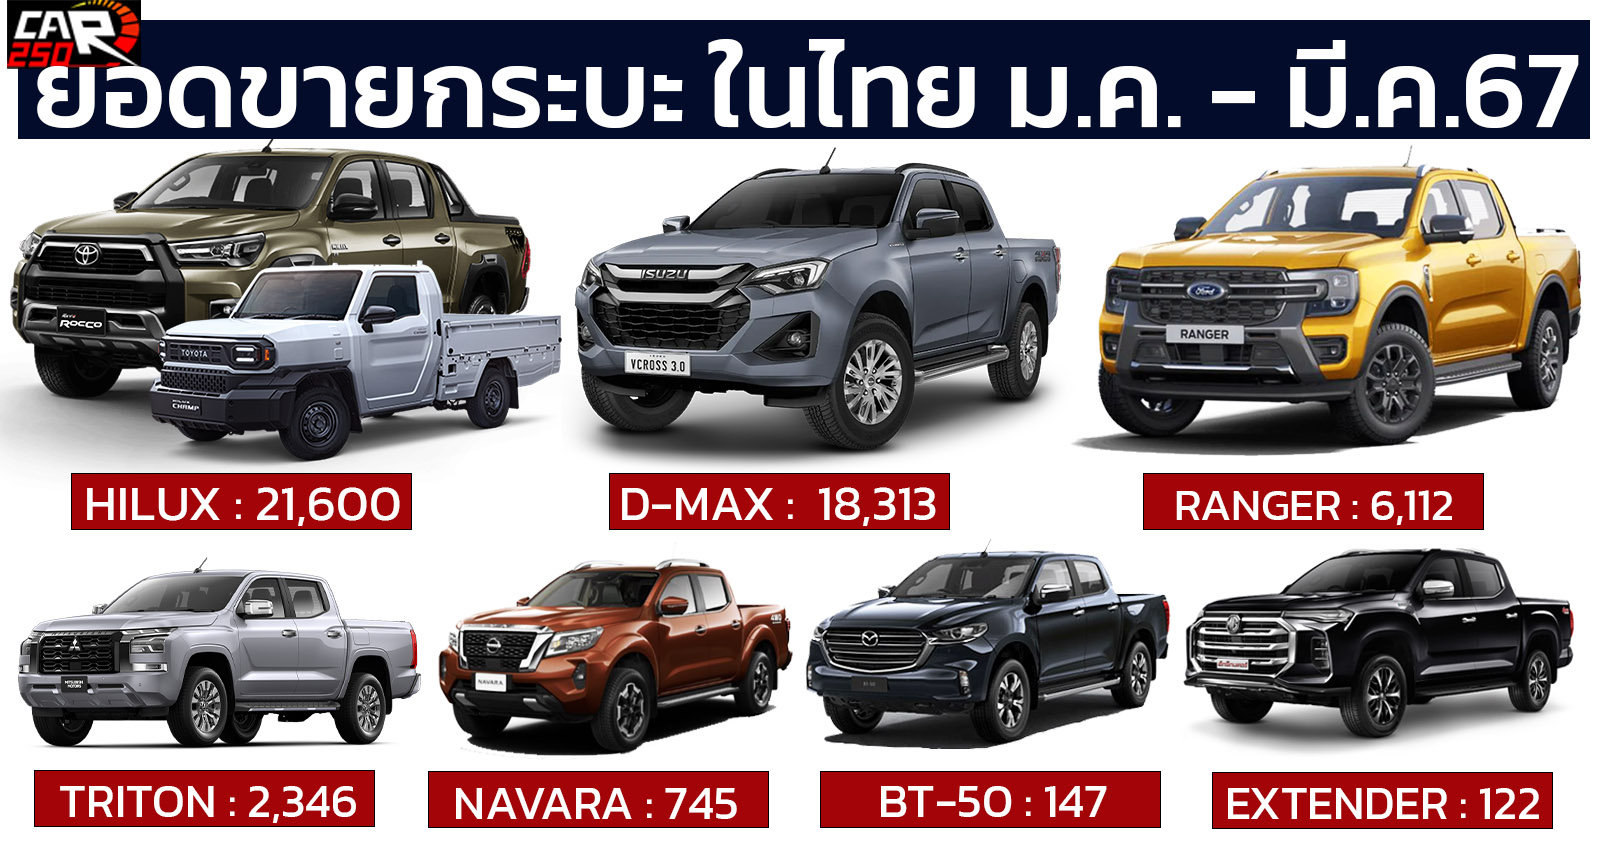 ยอดขายกระบะเมืองไทย มกราคม – มีนาคม 2567 รวมกว่า 48,714 คัน